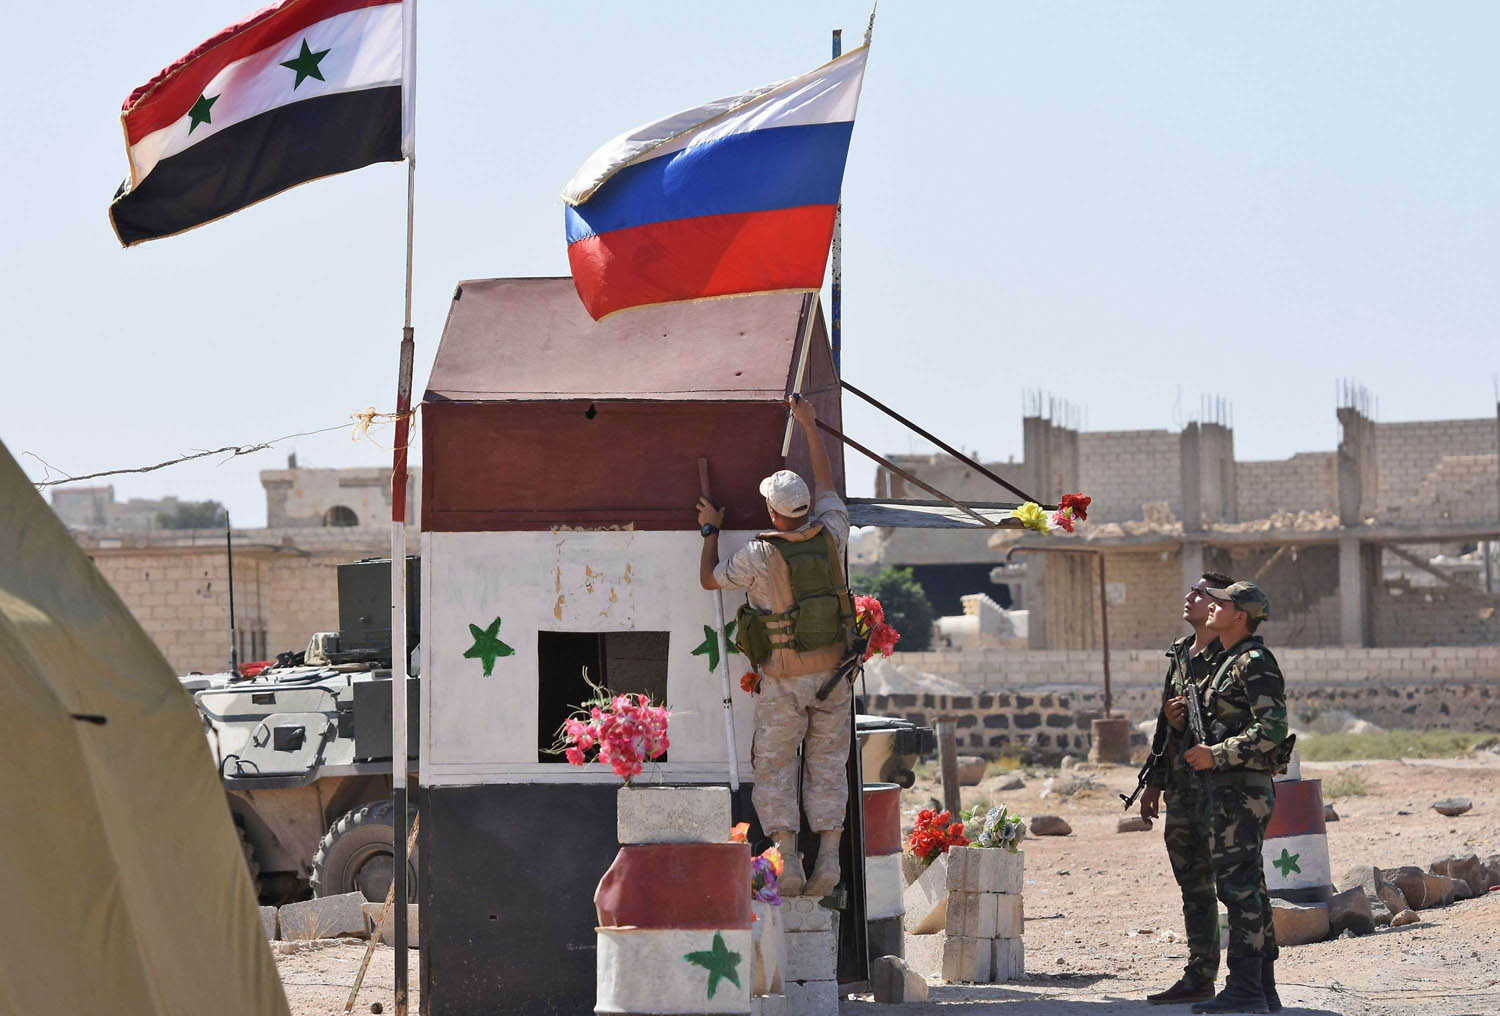 جندي روسي يرفع علم بلاده إلى جانب العلم السوري في أبو الظهور بالقرب من إدلب